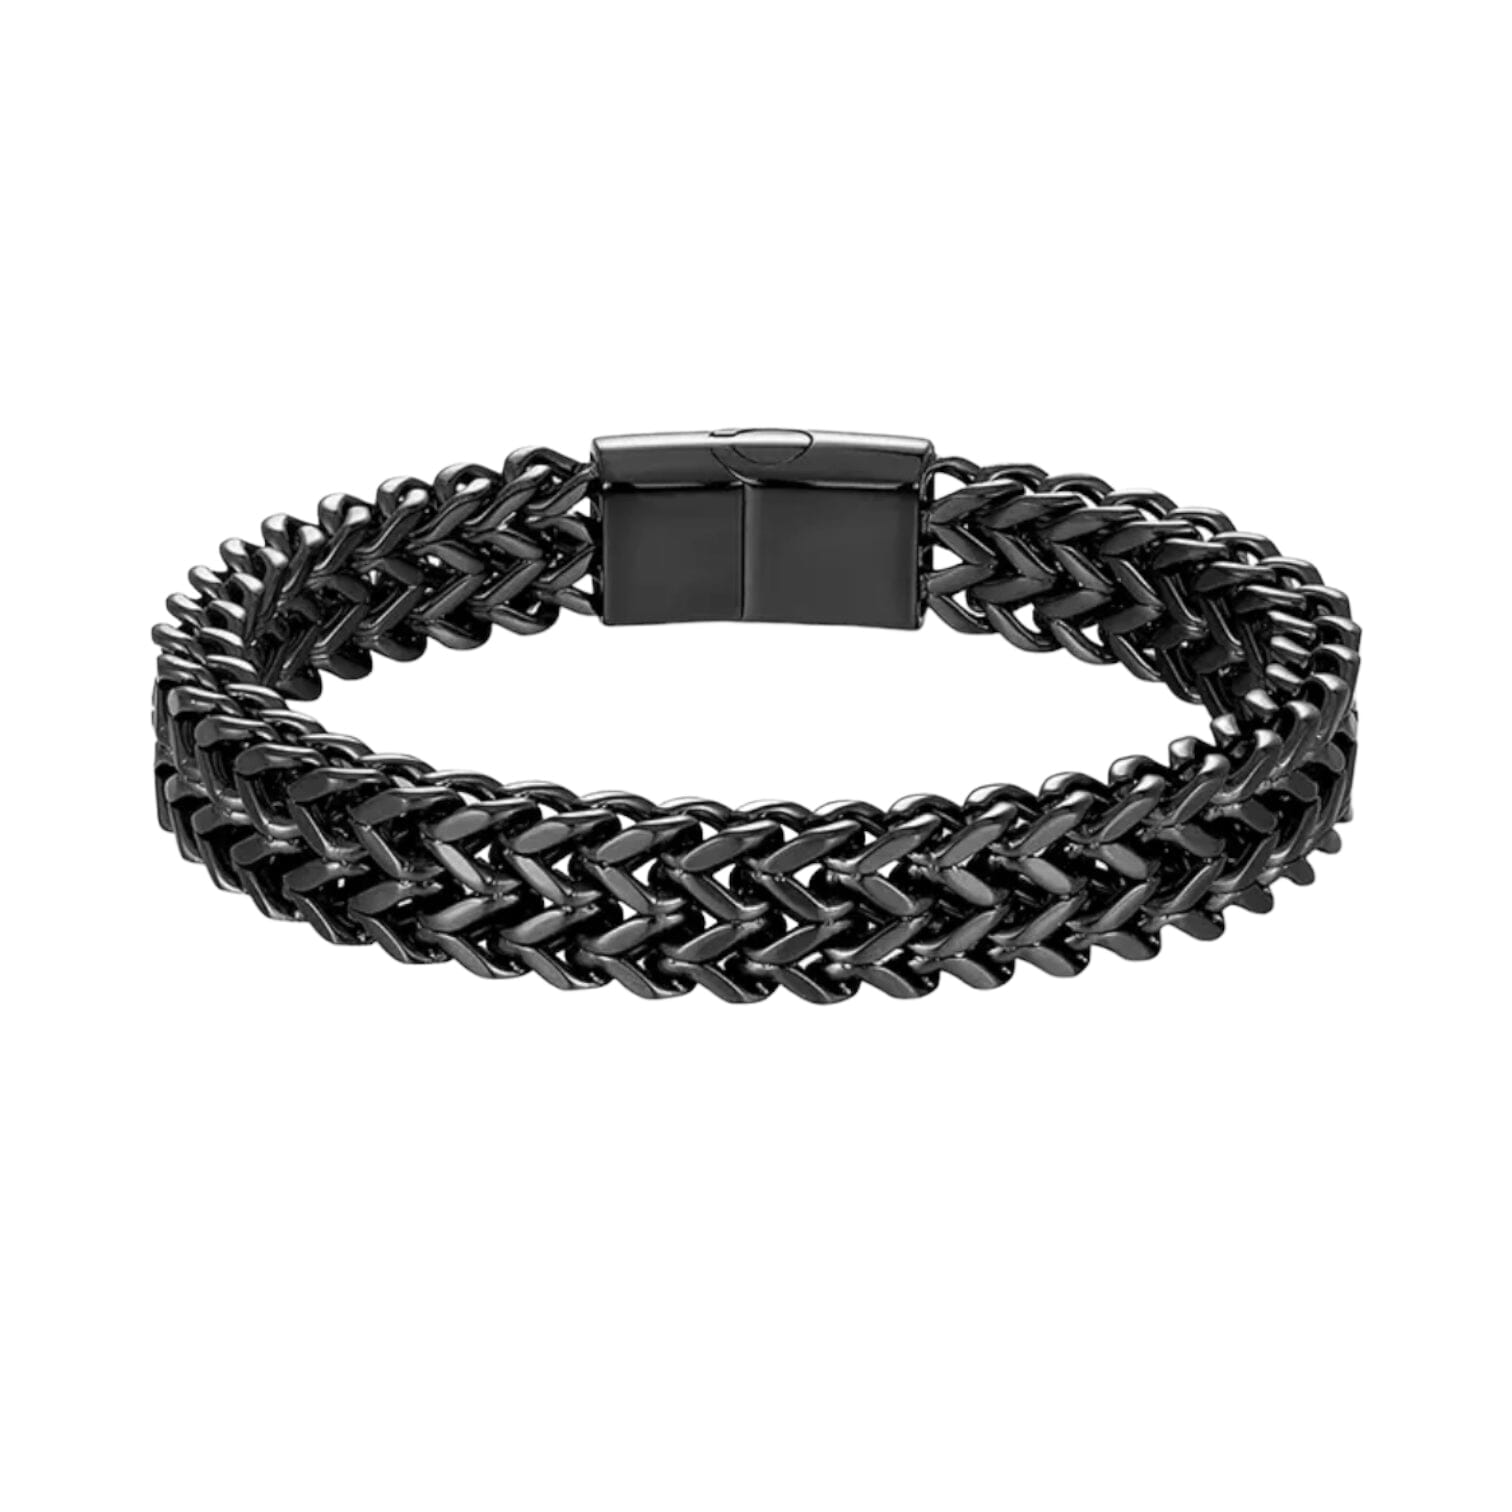 Sandro Stainless Steel Mens Bracelet Bracelets Trendzio Black 